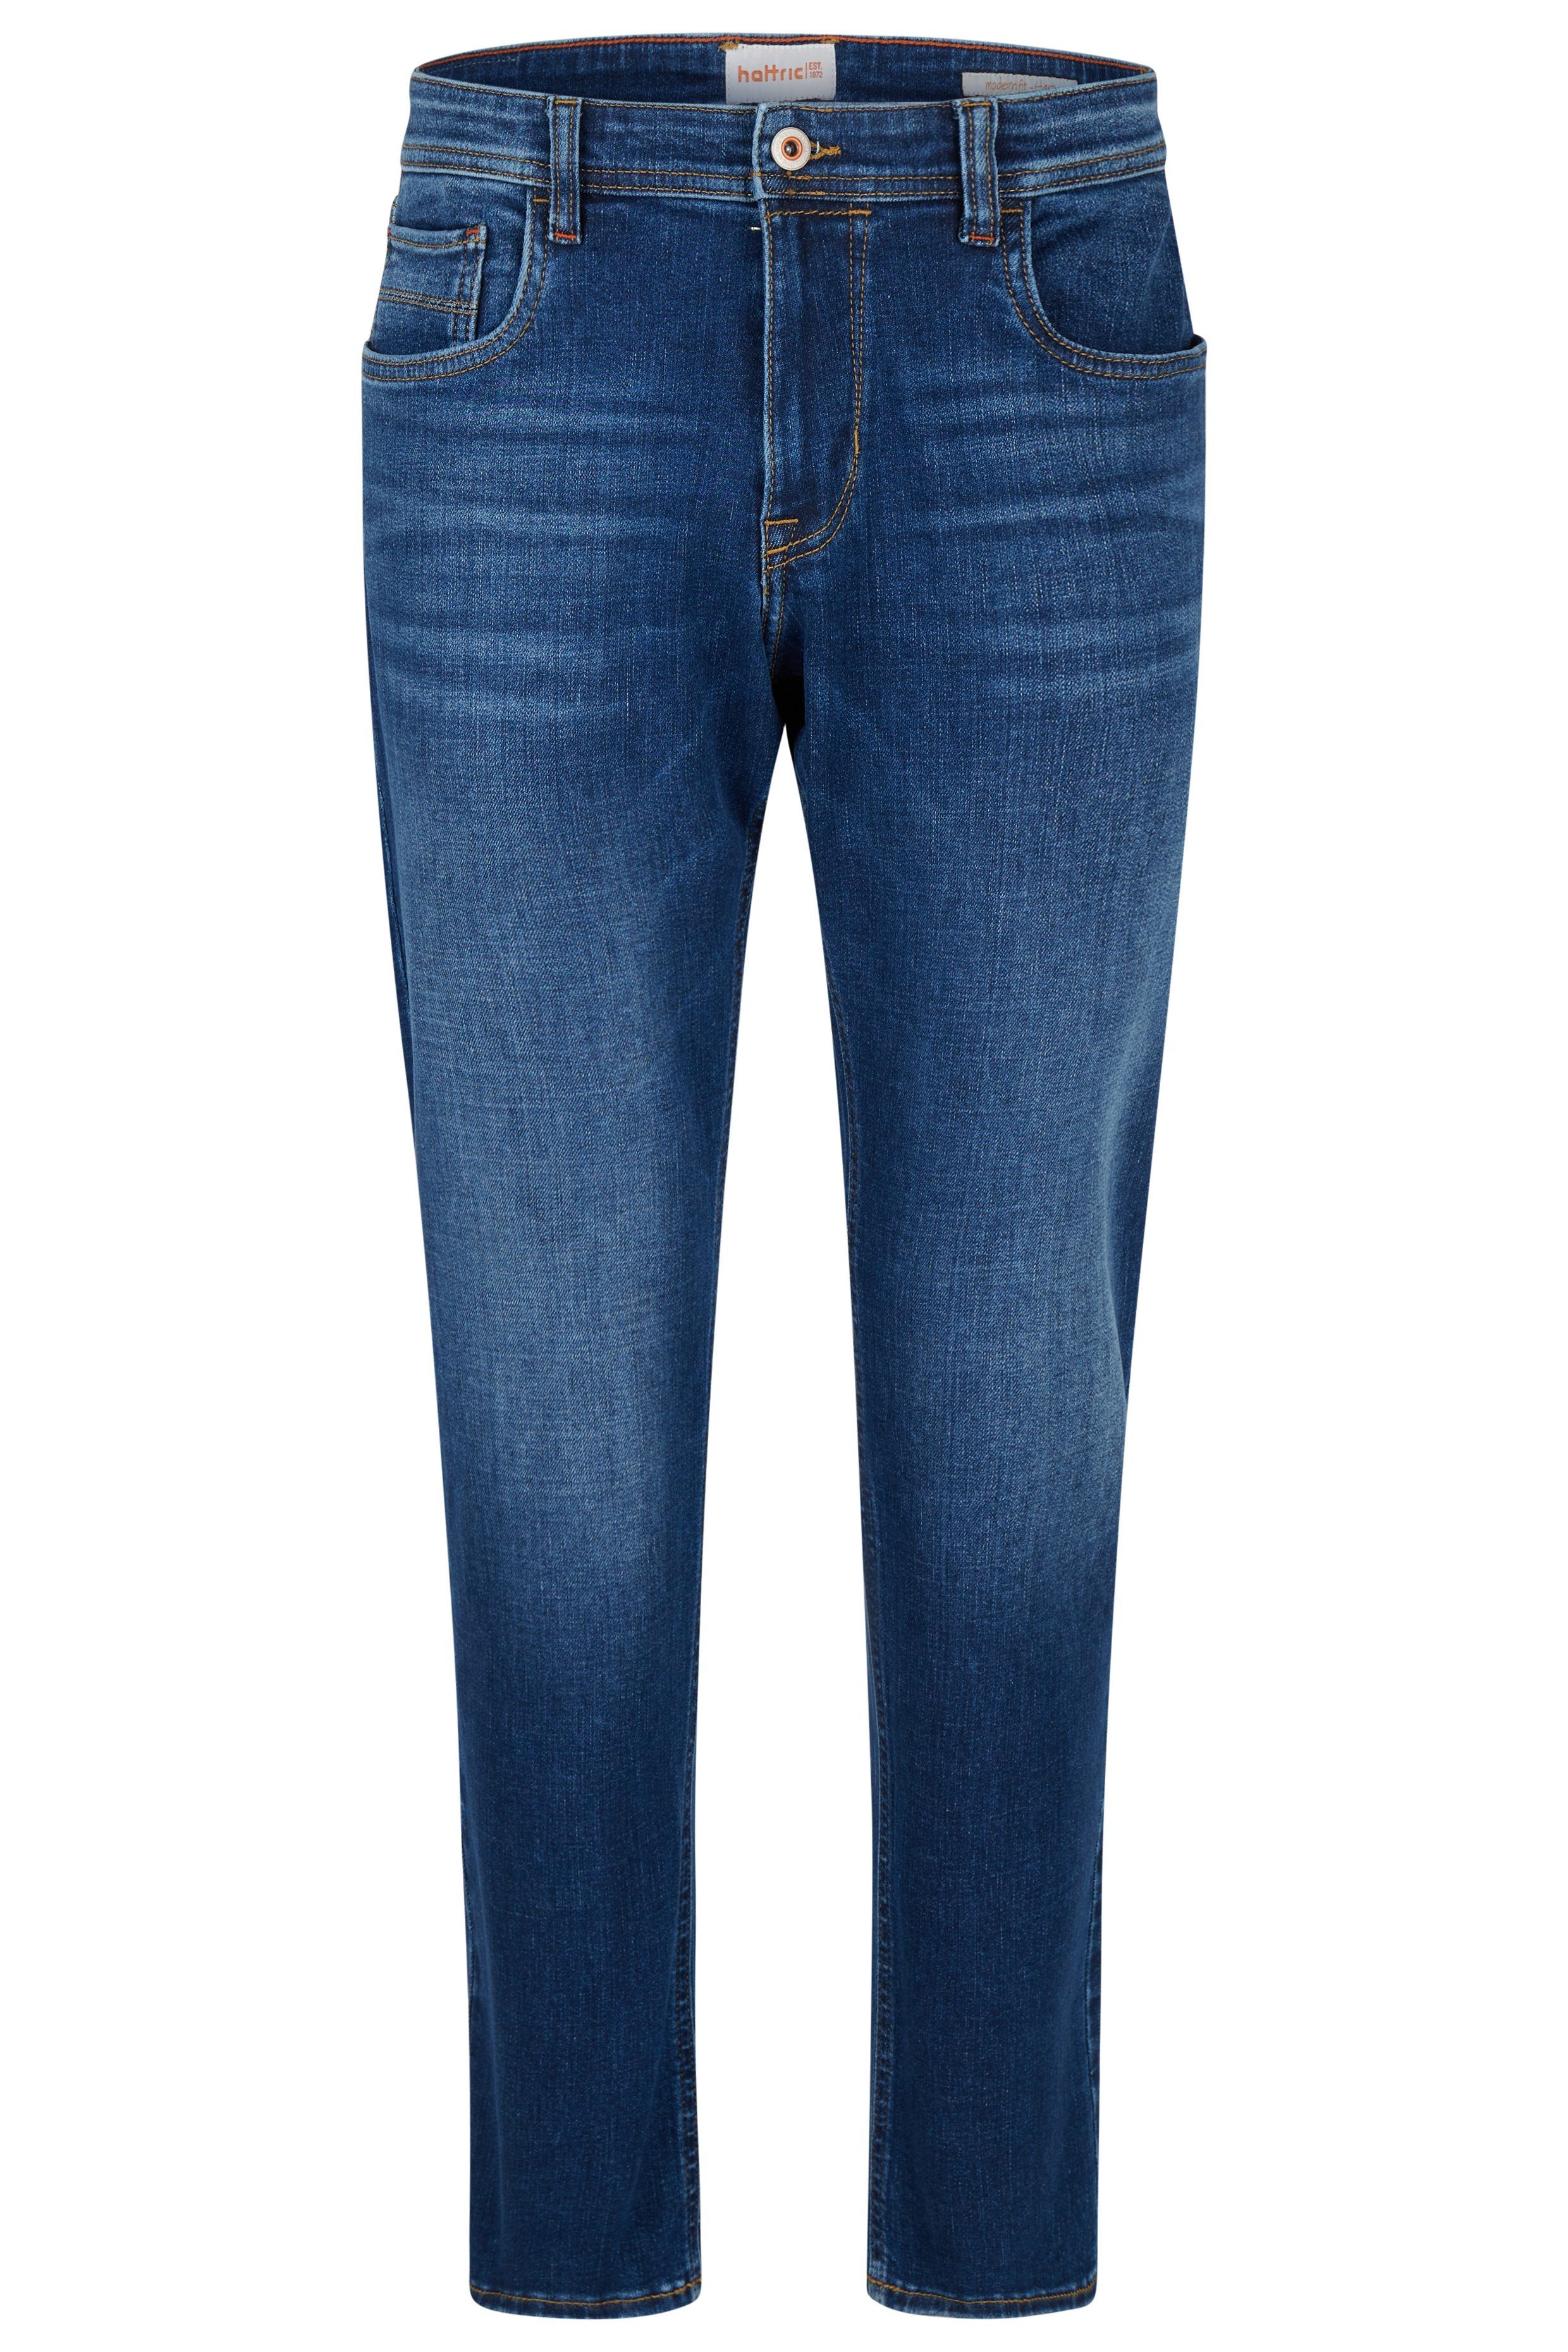 Hattric Slim-fit-Jeans blue